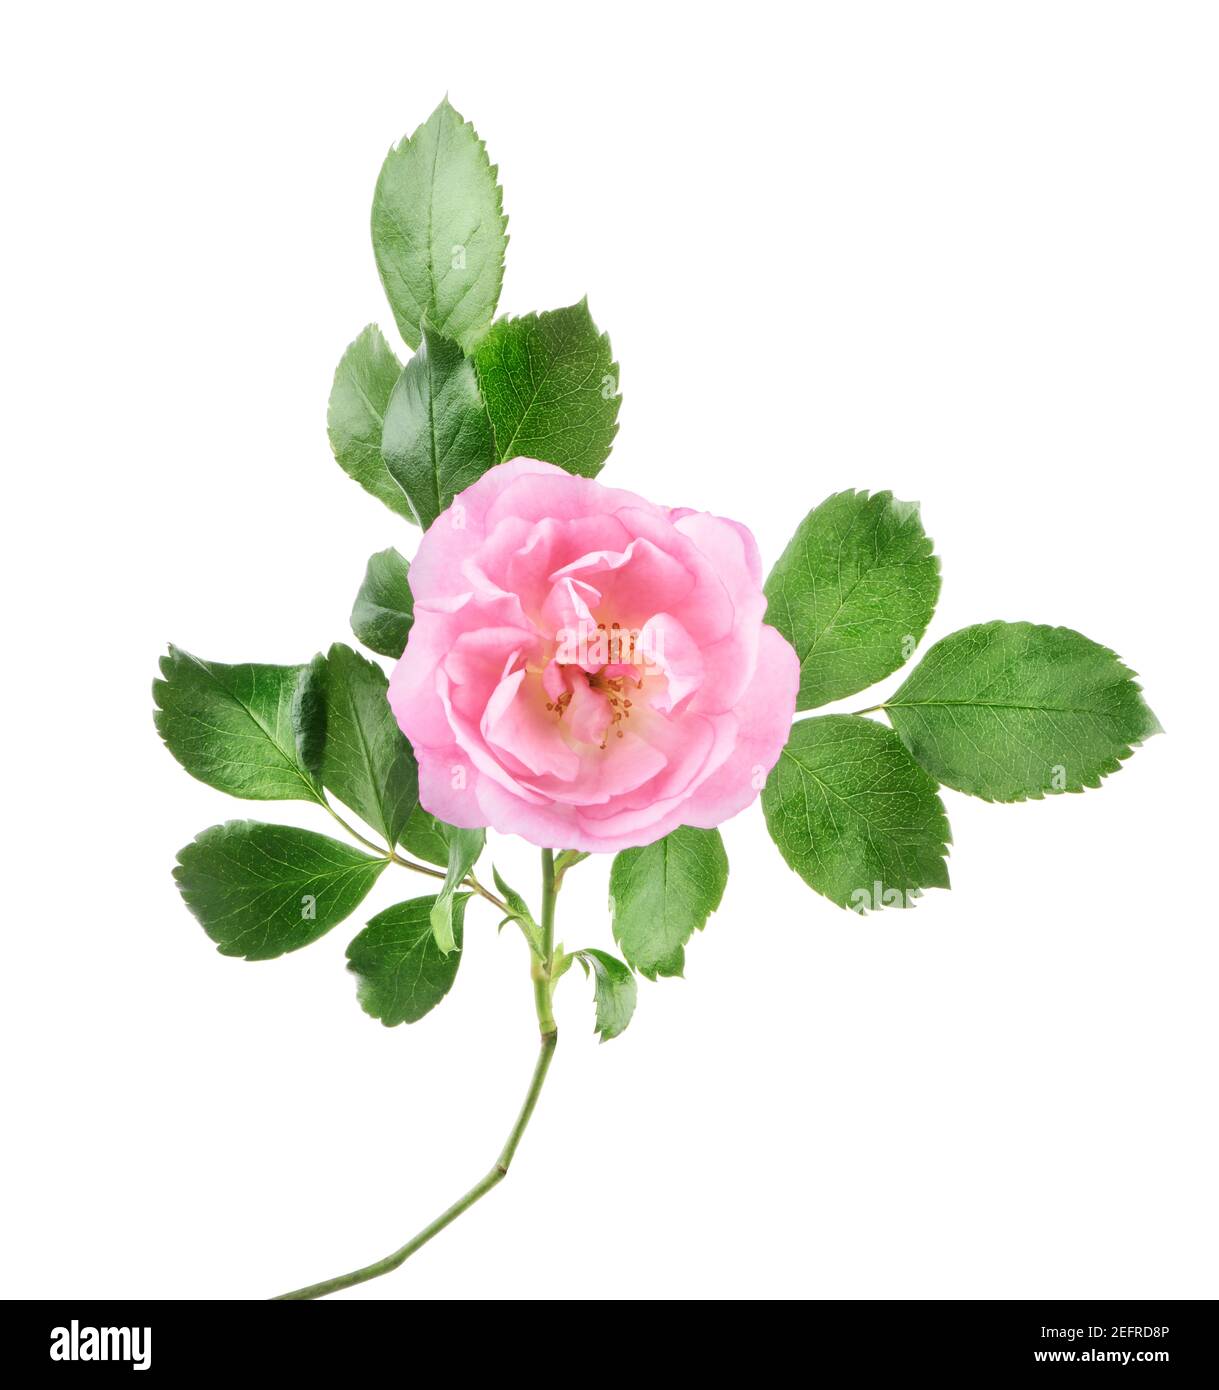 Rose Damas Rose, fleur délicate avec pétales ouverts sur une branche avec des feuilles vertes. Vue avant. Jardin rose artistique de près, isolé sur blanc studio b Banque D'Images